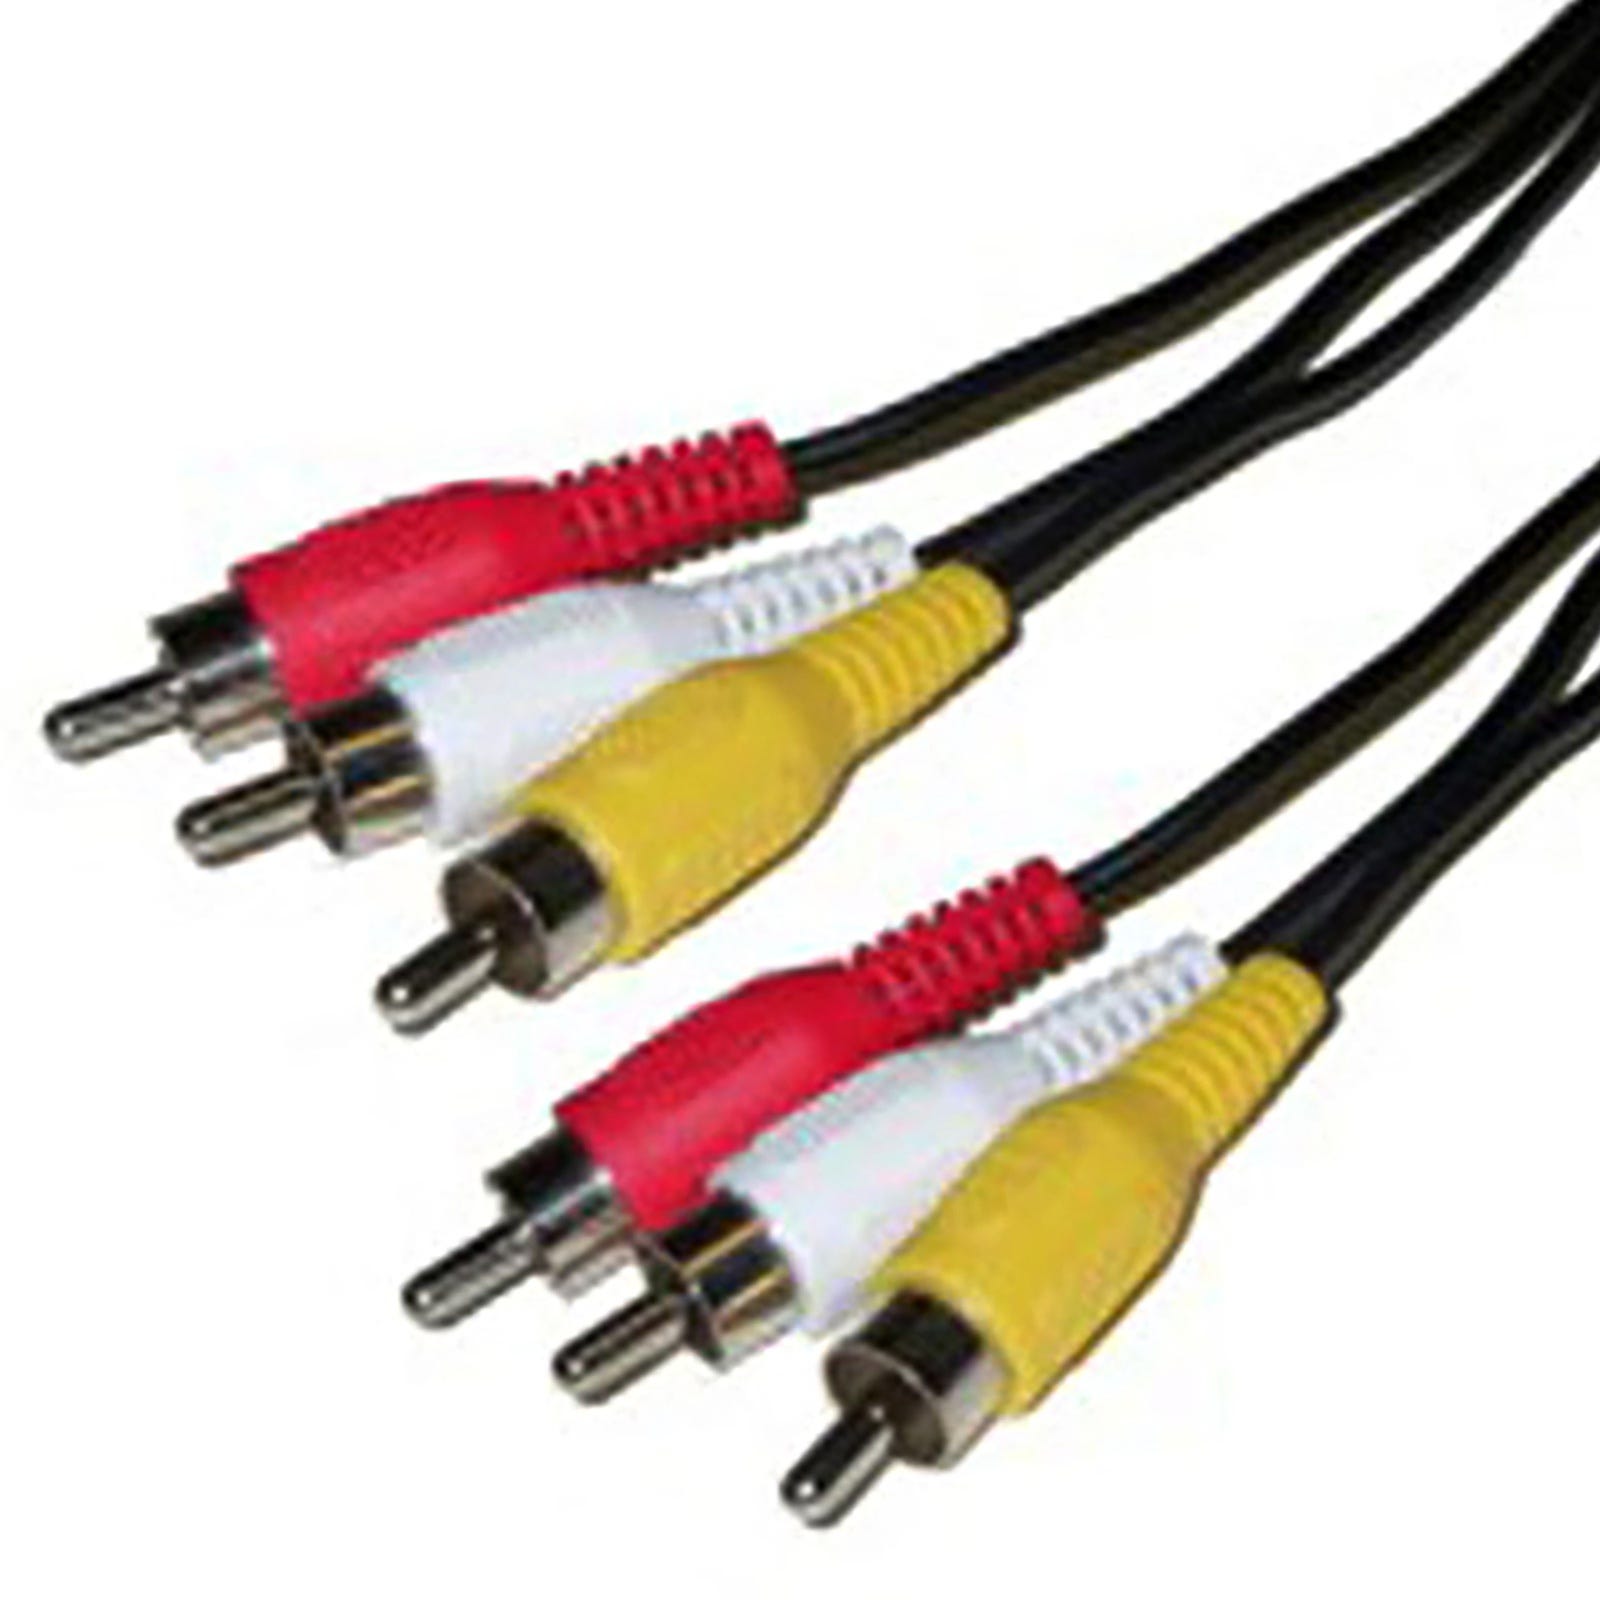 Câble enceinte hifi 2x0.75mm², 10m, noir et rouge, LEXMAN